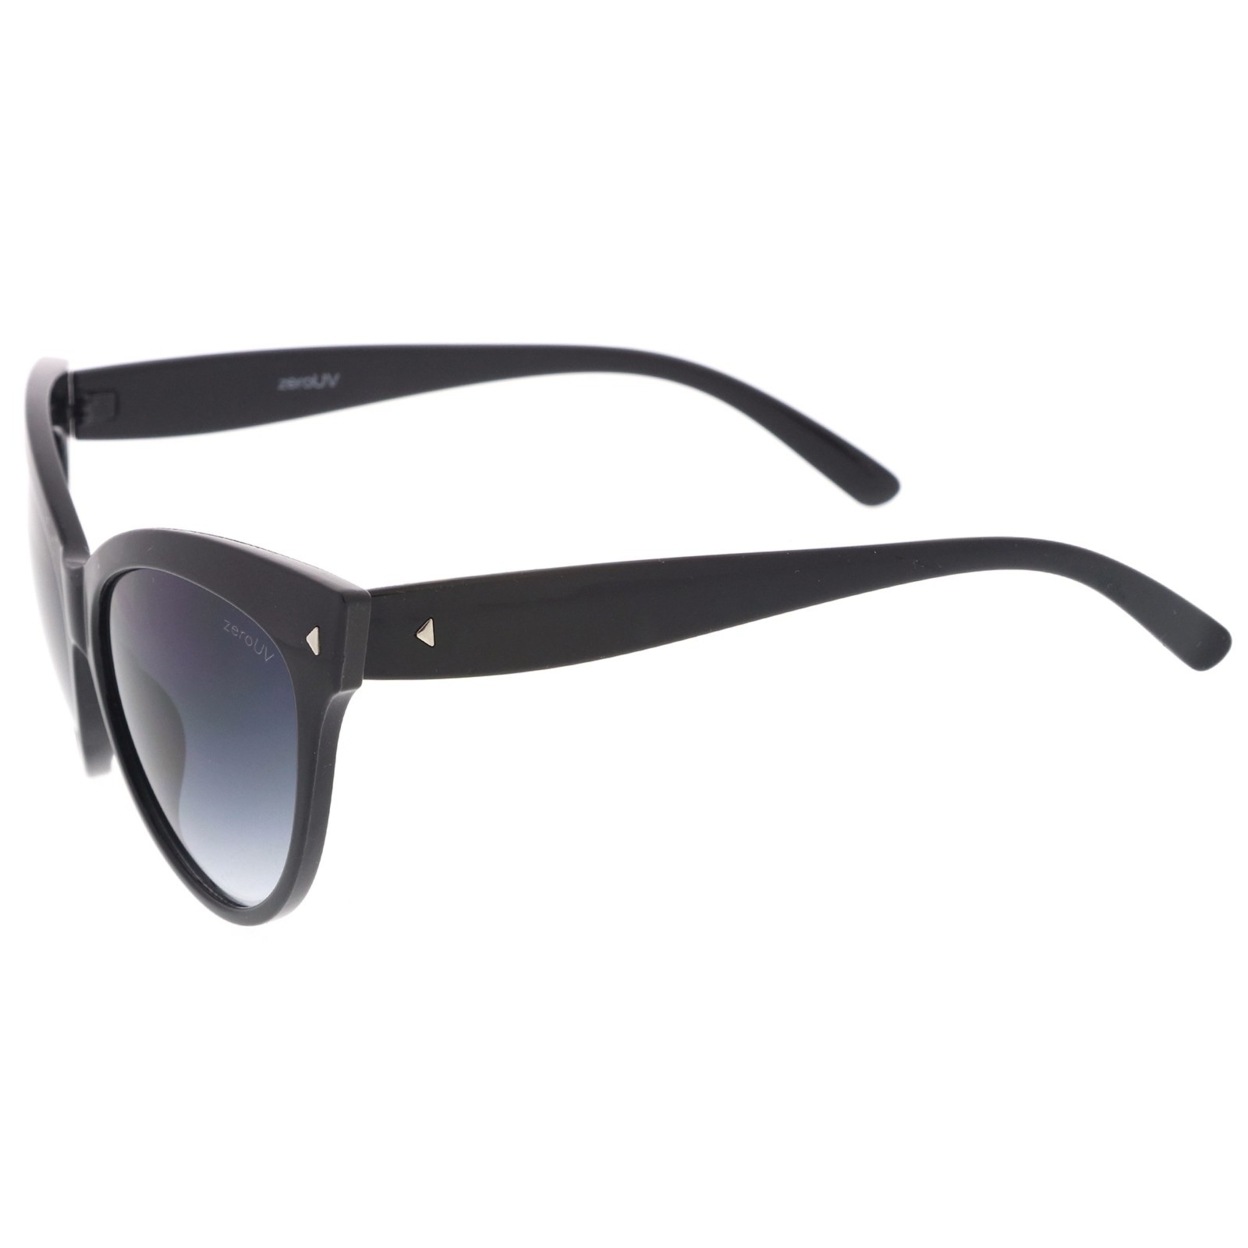 Women's Mod Oversize Horn Rimmed Cat Eye Sunglasses 52mm - Black / Lavender